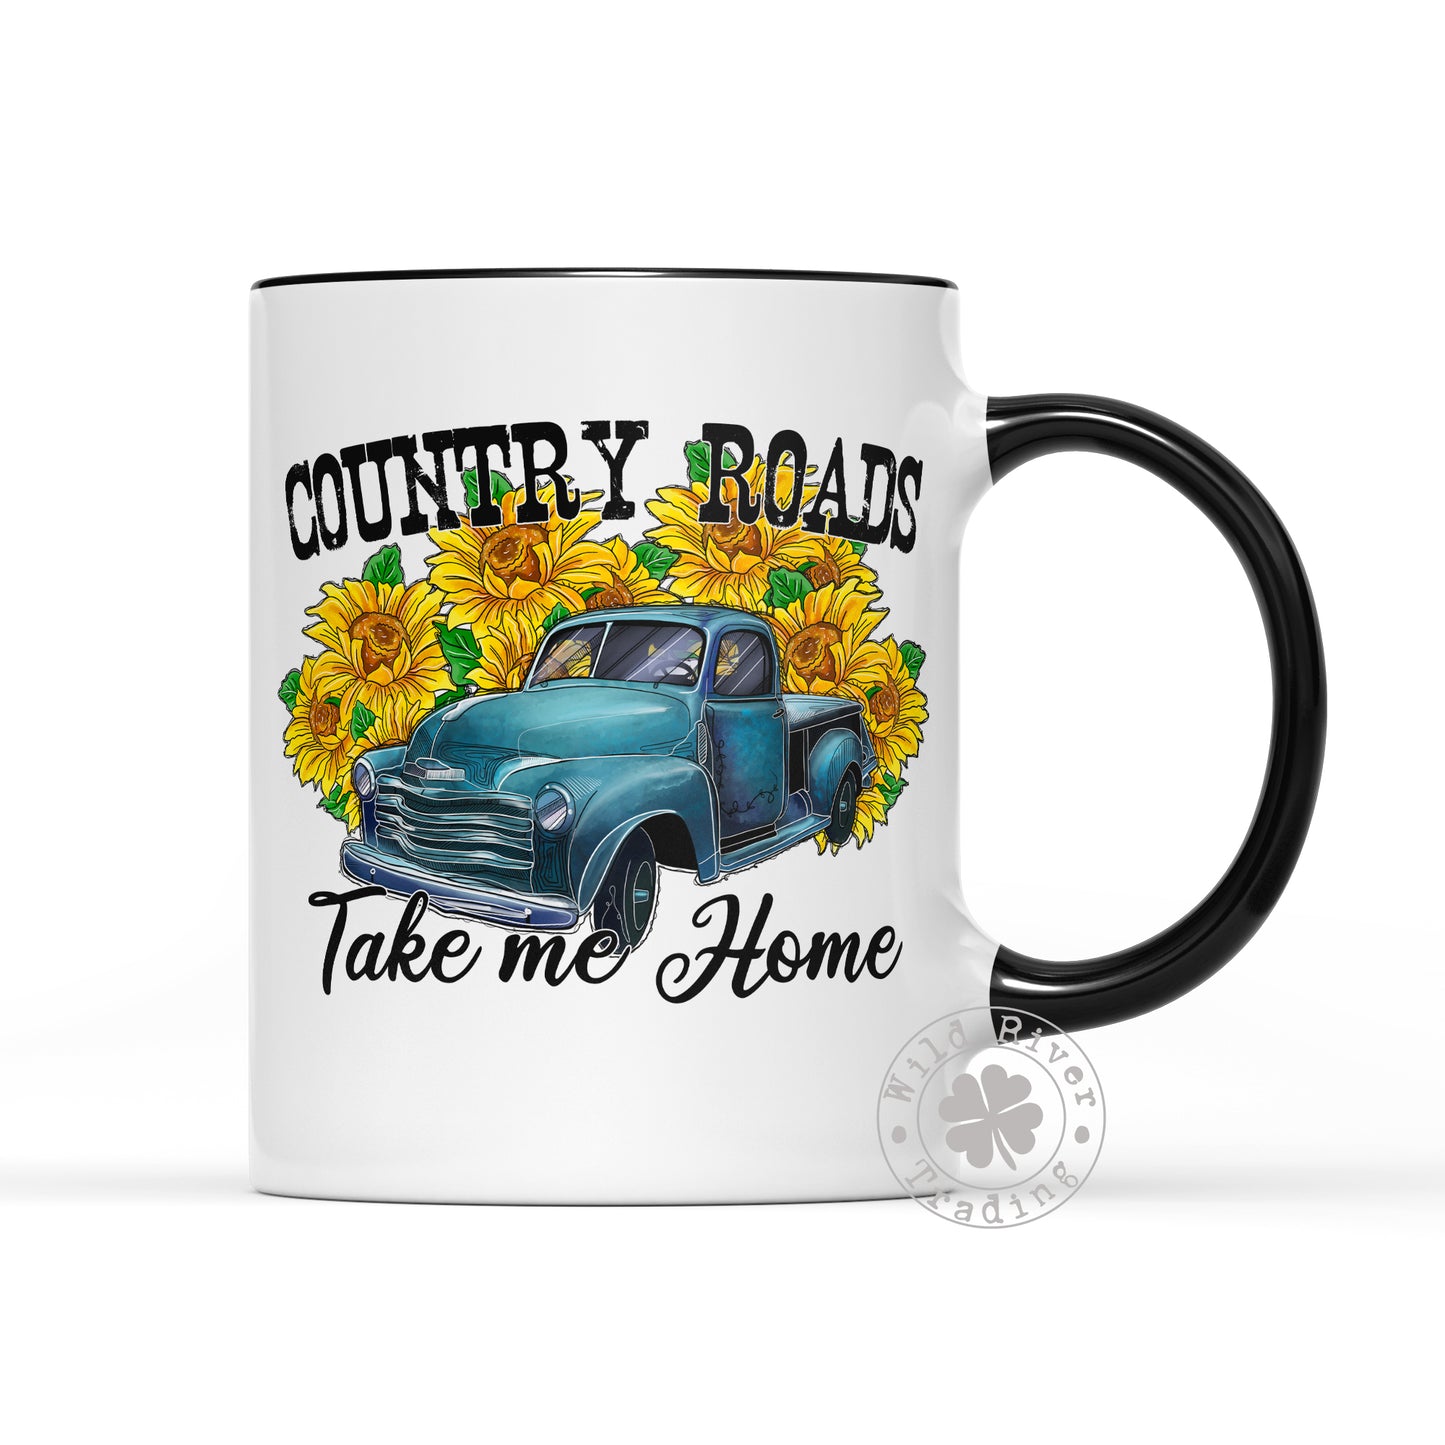 Country Roads Take Me Home Mug